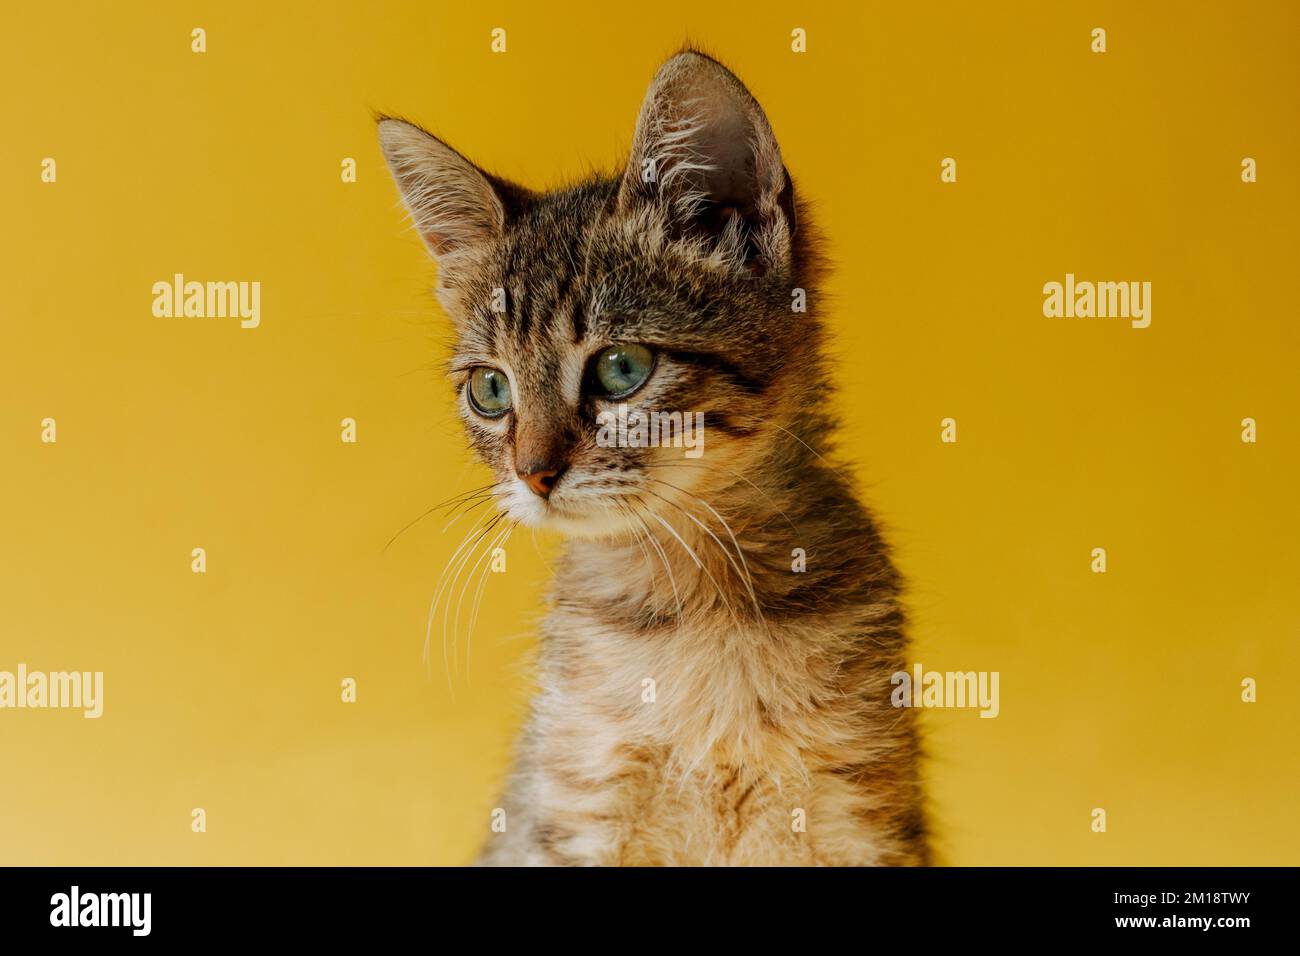 Ritratto di un gatto a righe su sfondo giallo. Il gattino guarda l'oggetto. Spazio di copia. Banner con animale. Foto Stock